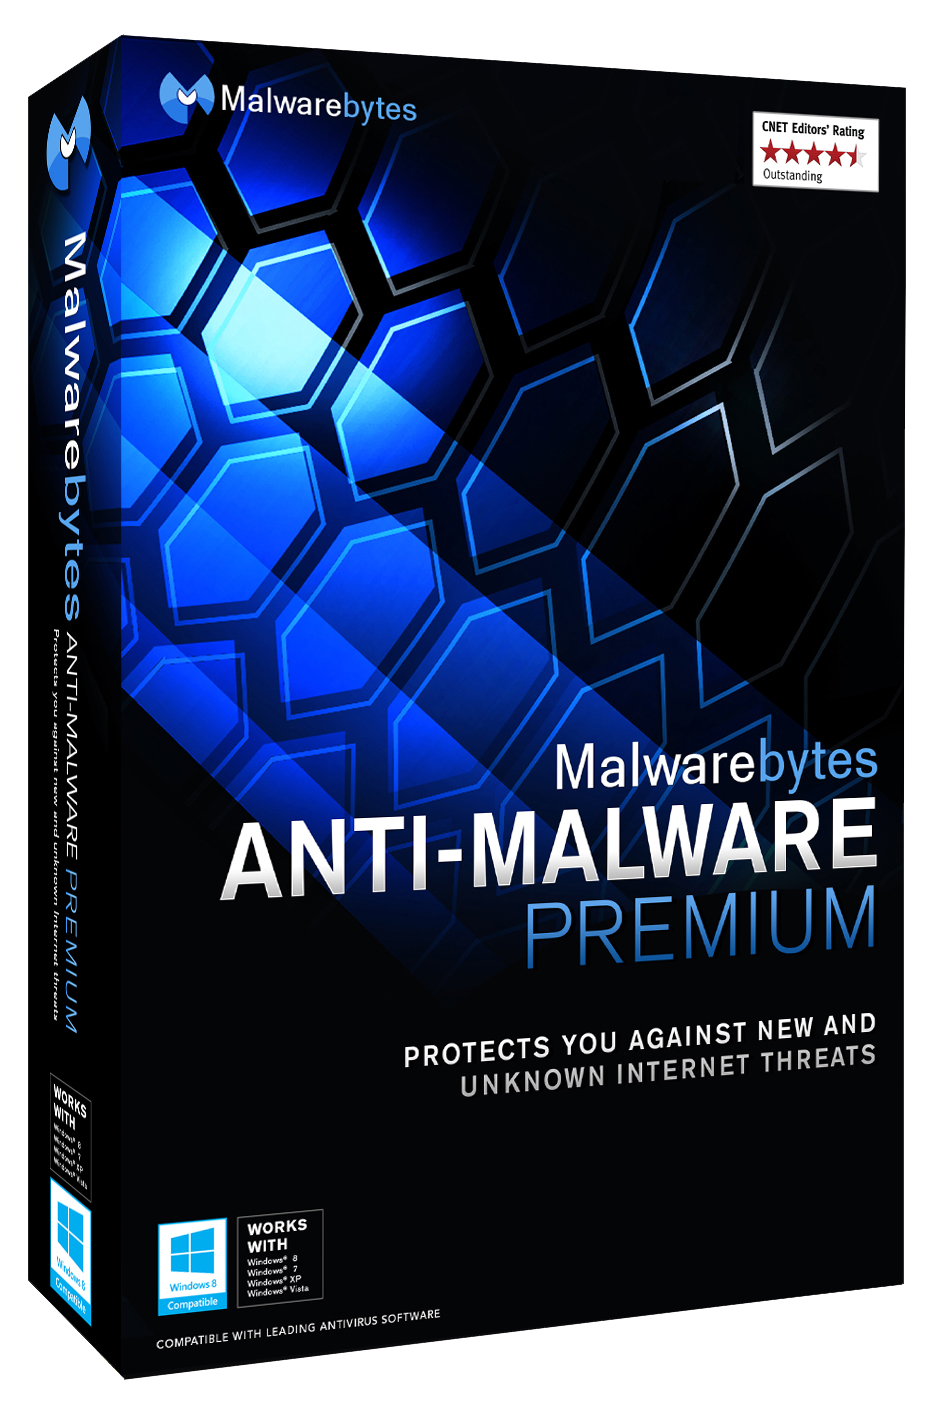 download malwarebytes anti-malware pro 2015 full and free